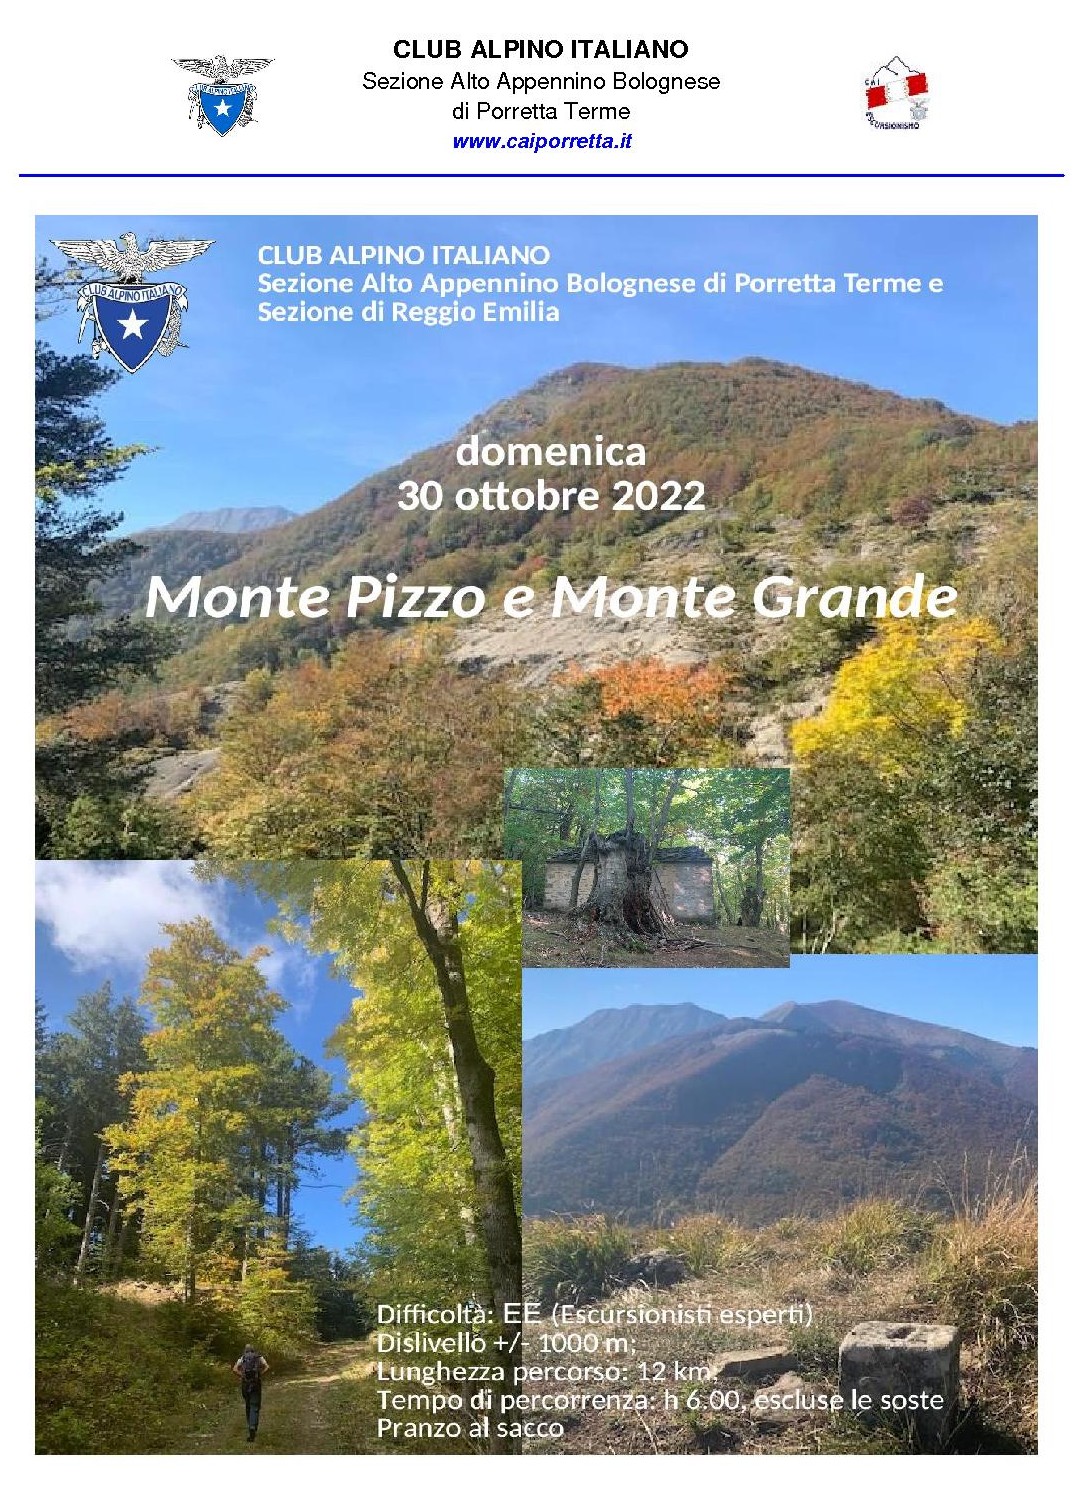 Domenica 30 ottobre 2022 Monte Pizzo e Monte Grande con CAI Reggio Emilia